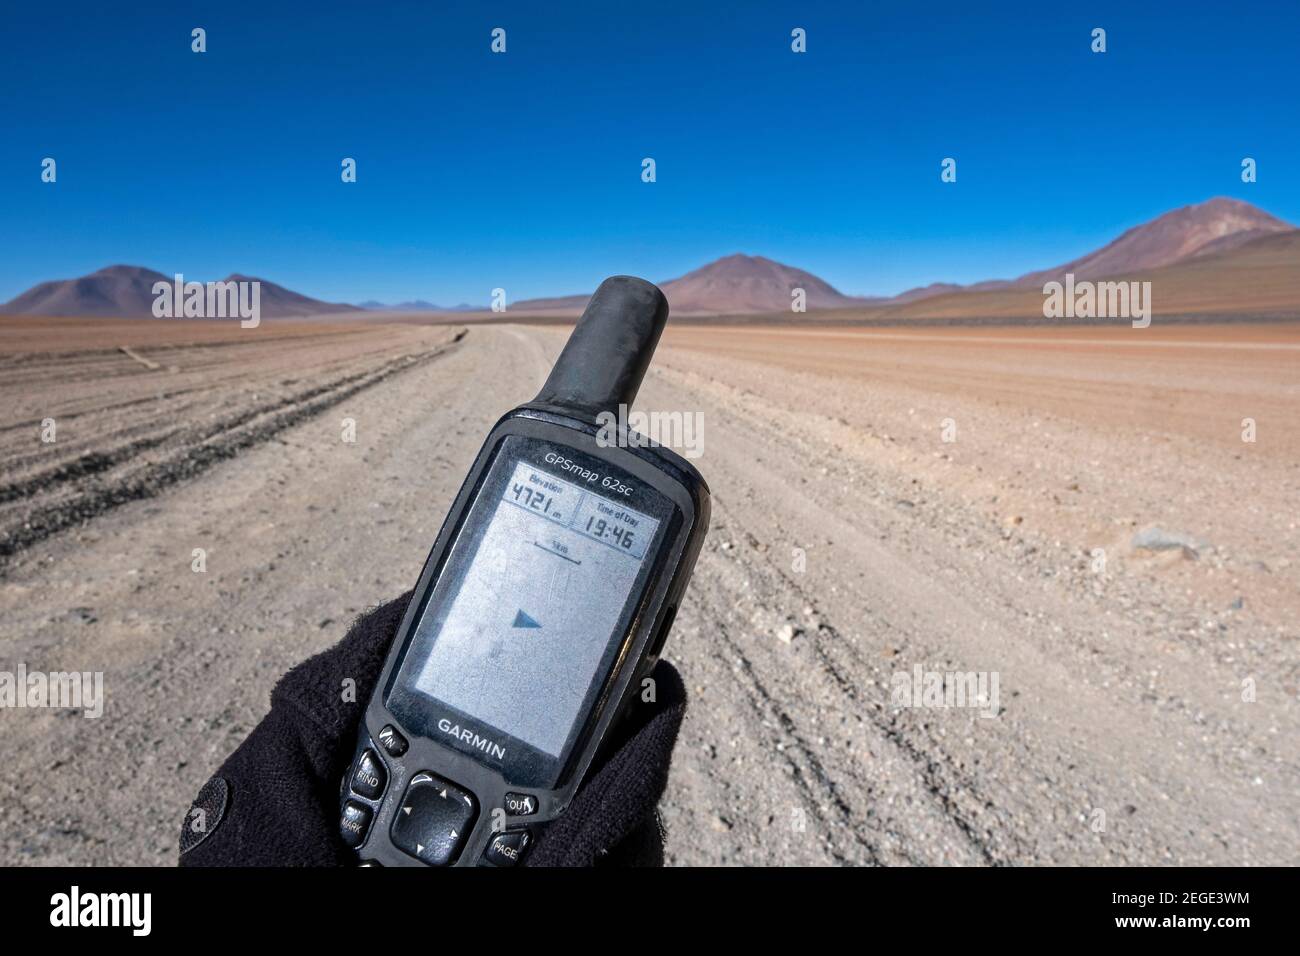 Garmin GPSMAP 62sc, navegador GPS portátil que muestra una altitud de más  de 4700 metros en el Altiplano / Meseta Andina en los Andes, Bolivia  Fotografía de stock - Alamy